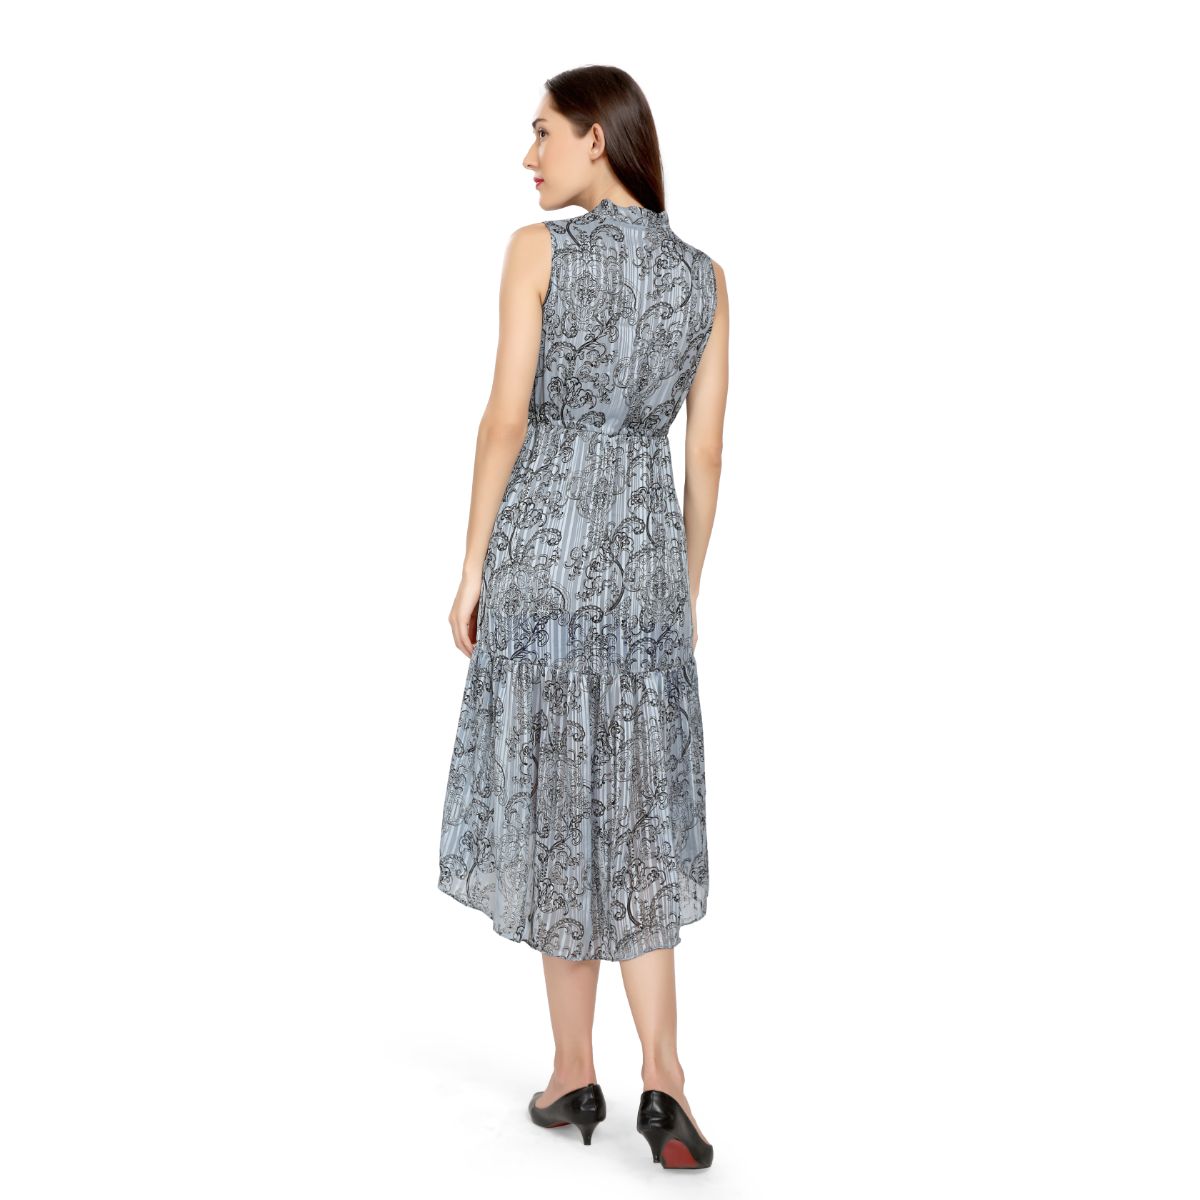 Mantra grey Flowy high low dress